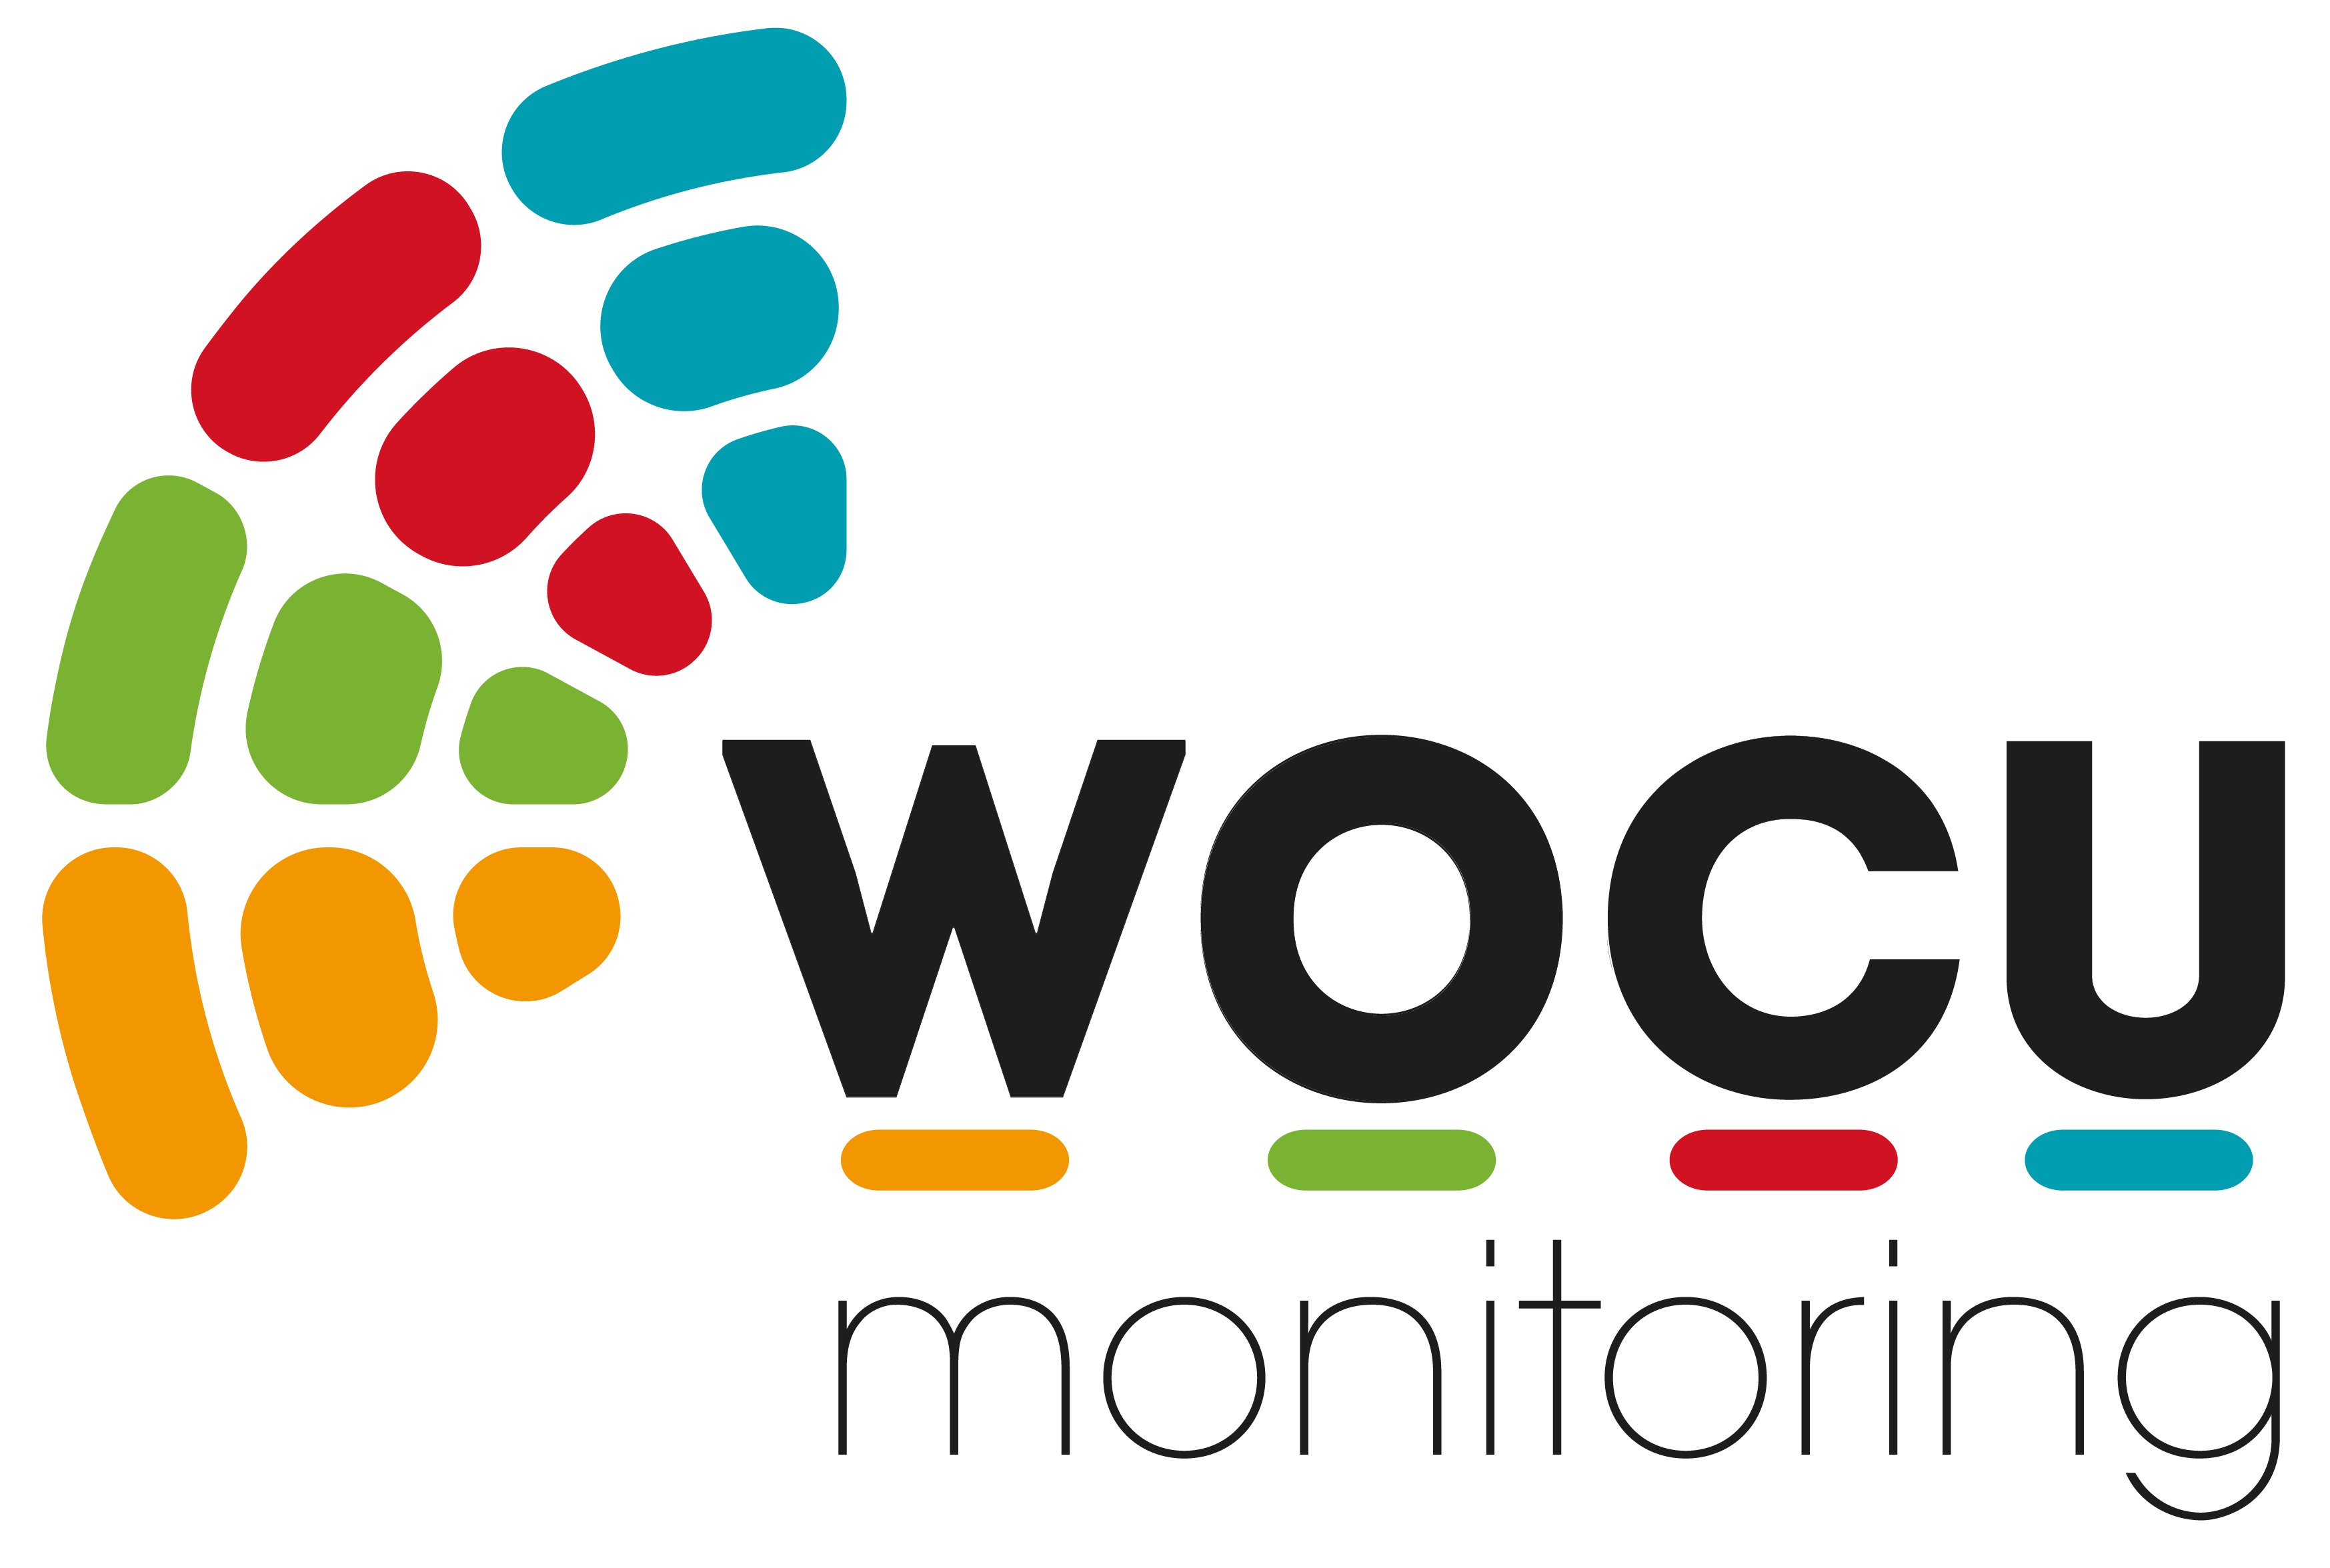 WOCU-Monitoring-logo